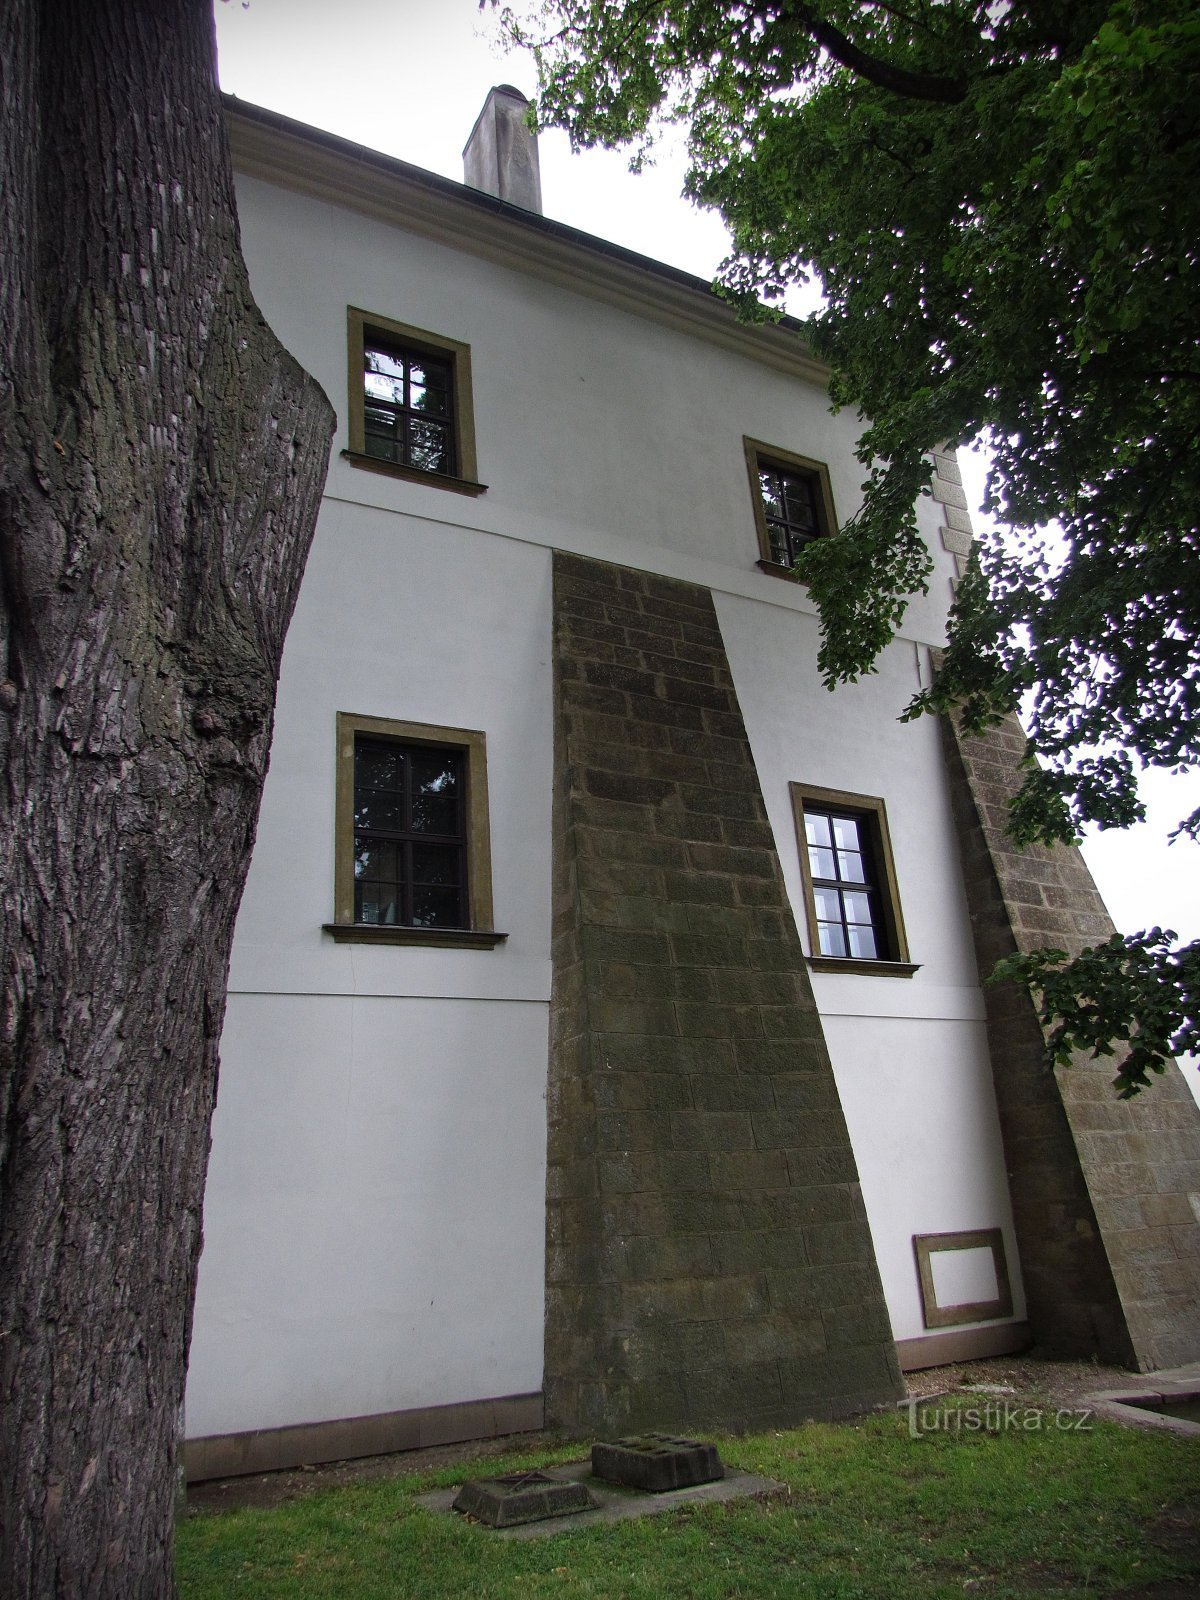 I locali del castello di Letohrad